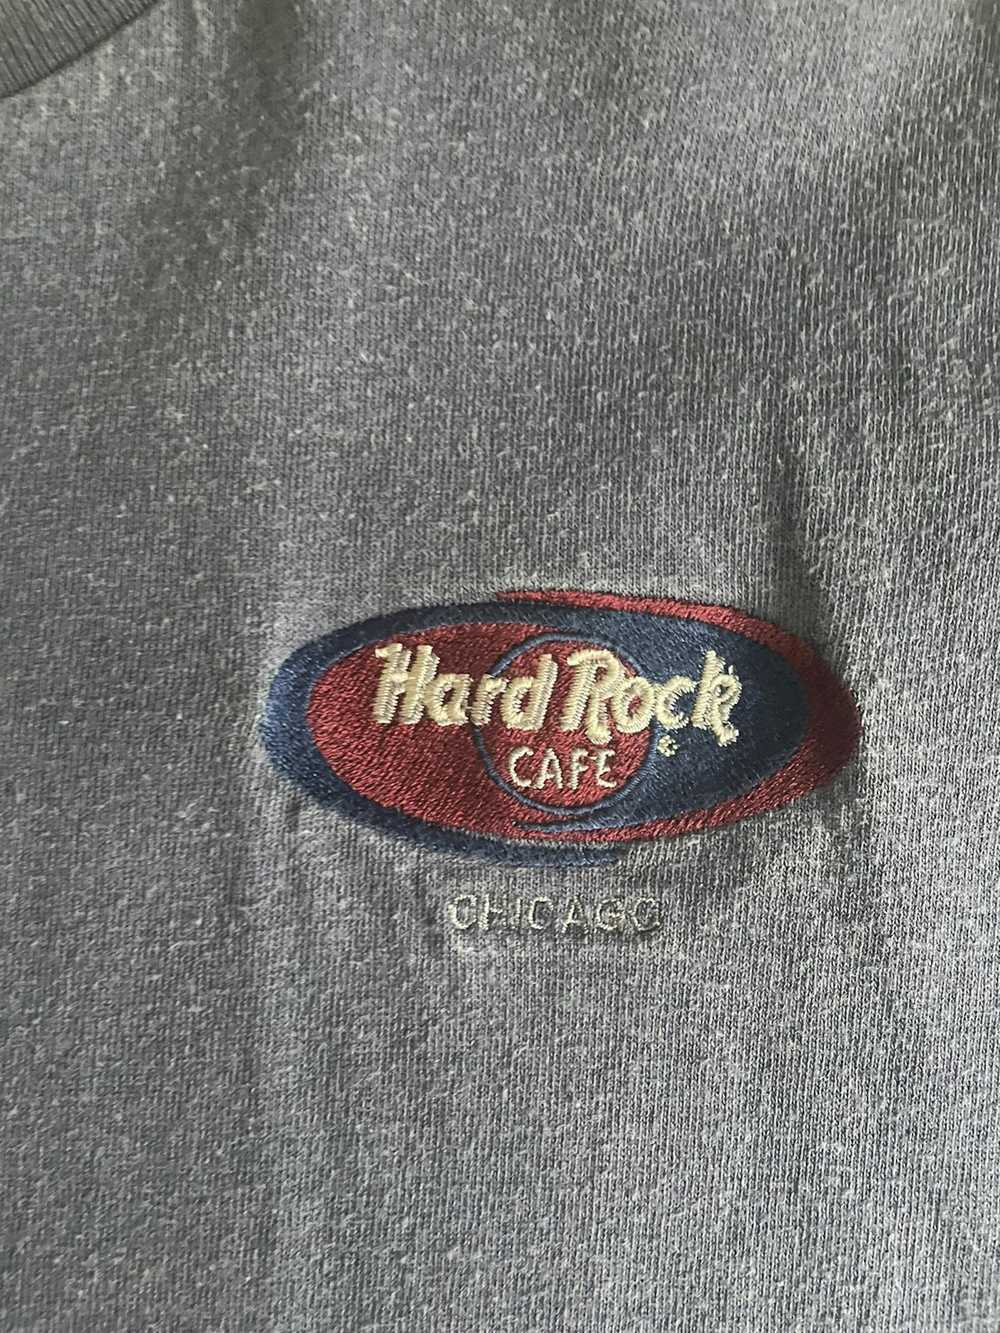 Hard Rock Cafe Vintage Hard Rock Cafe T-shirt - image 2